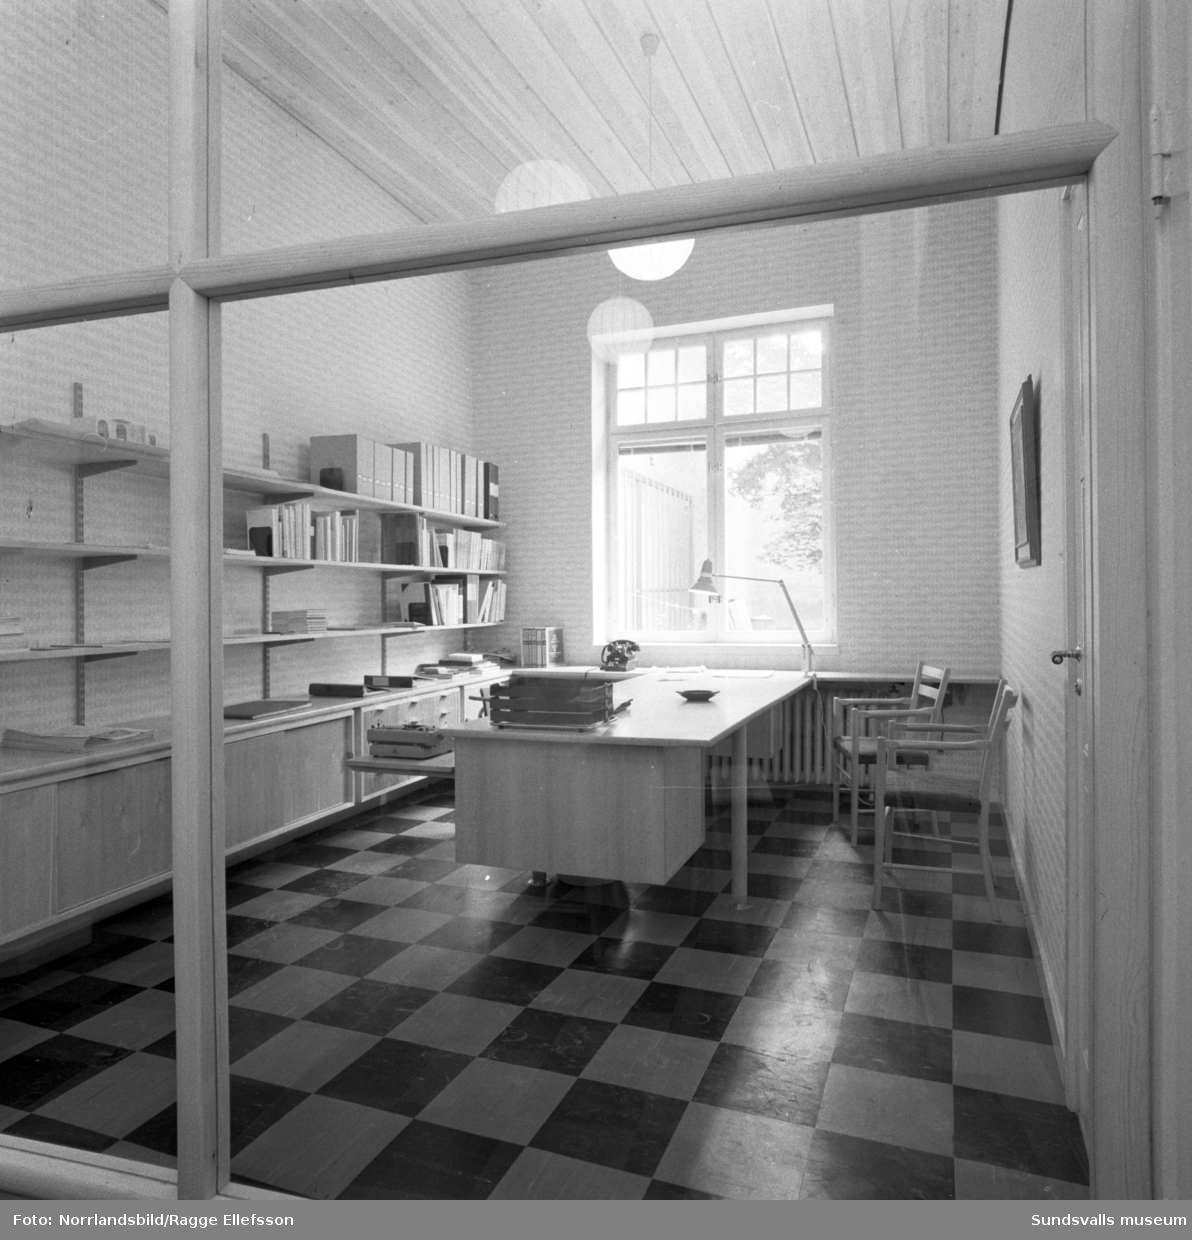 Sundsvalls museum: interiör från litteraturrummet och genom glasväggen, putsning av valven i nedre våningen, sal i andra våningen under målning, takarbeten på nedre våningen samt restaurering av gammalt ornament.